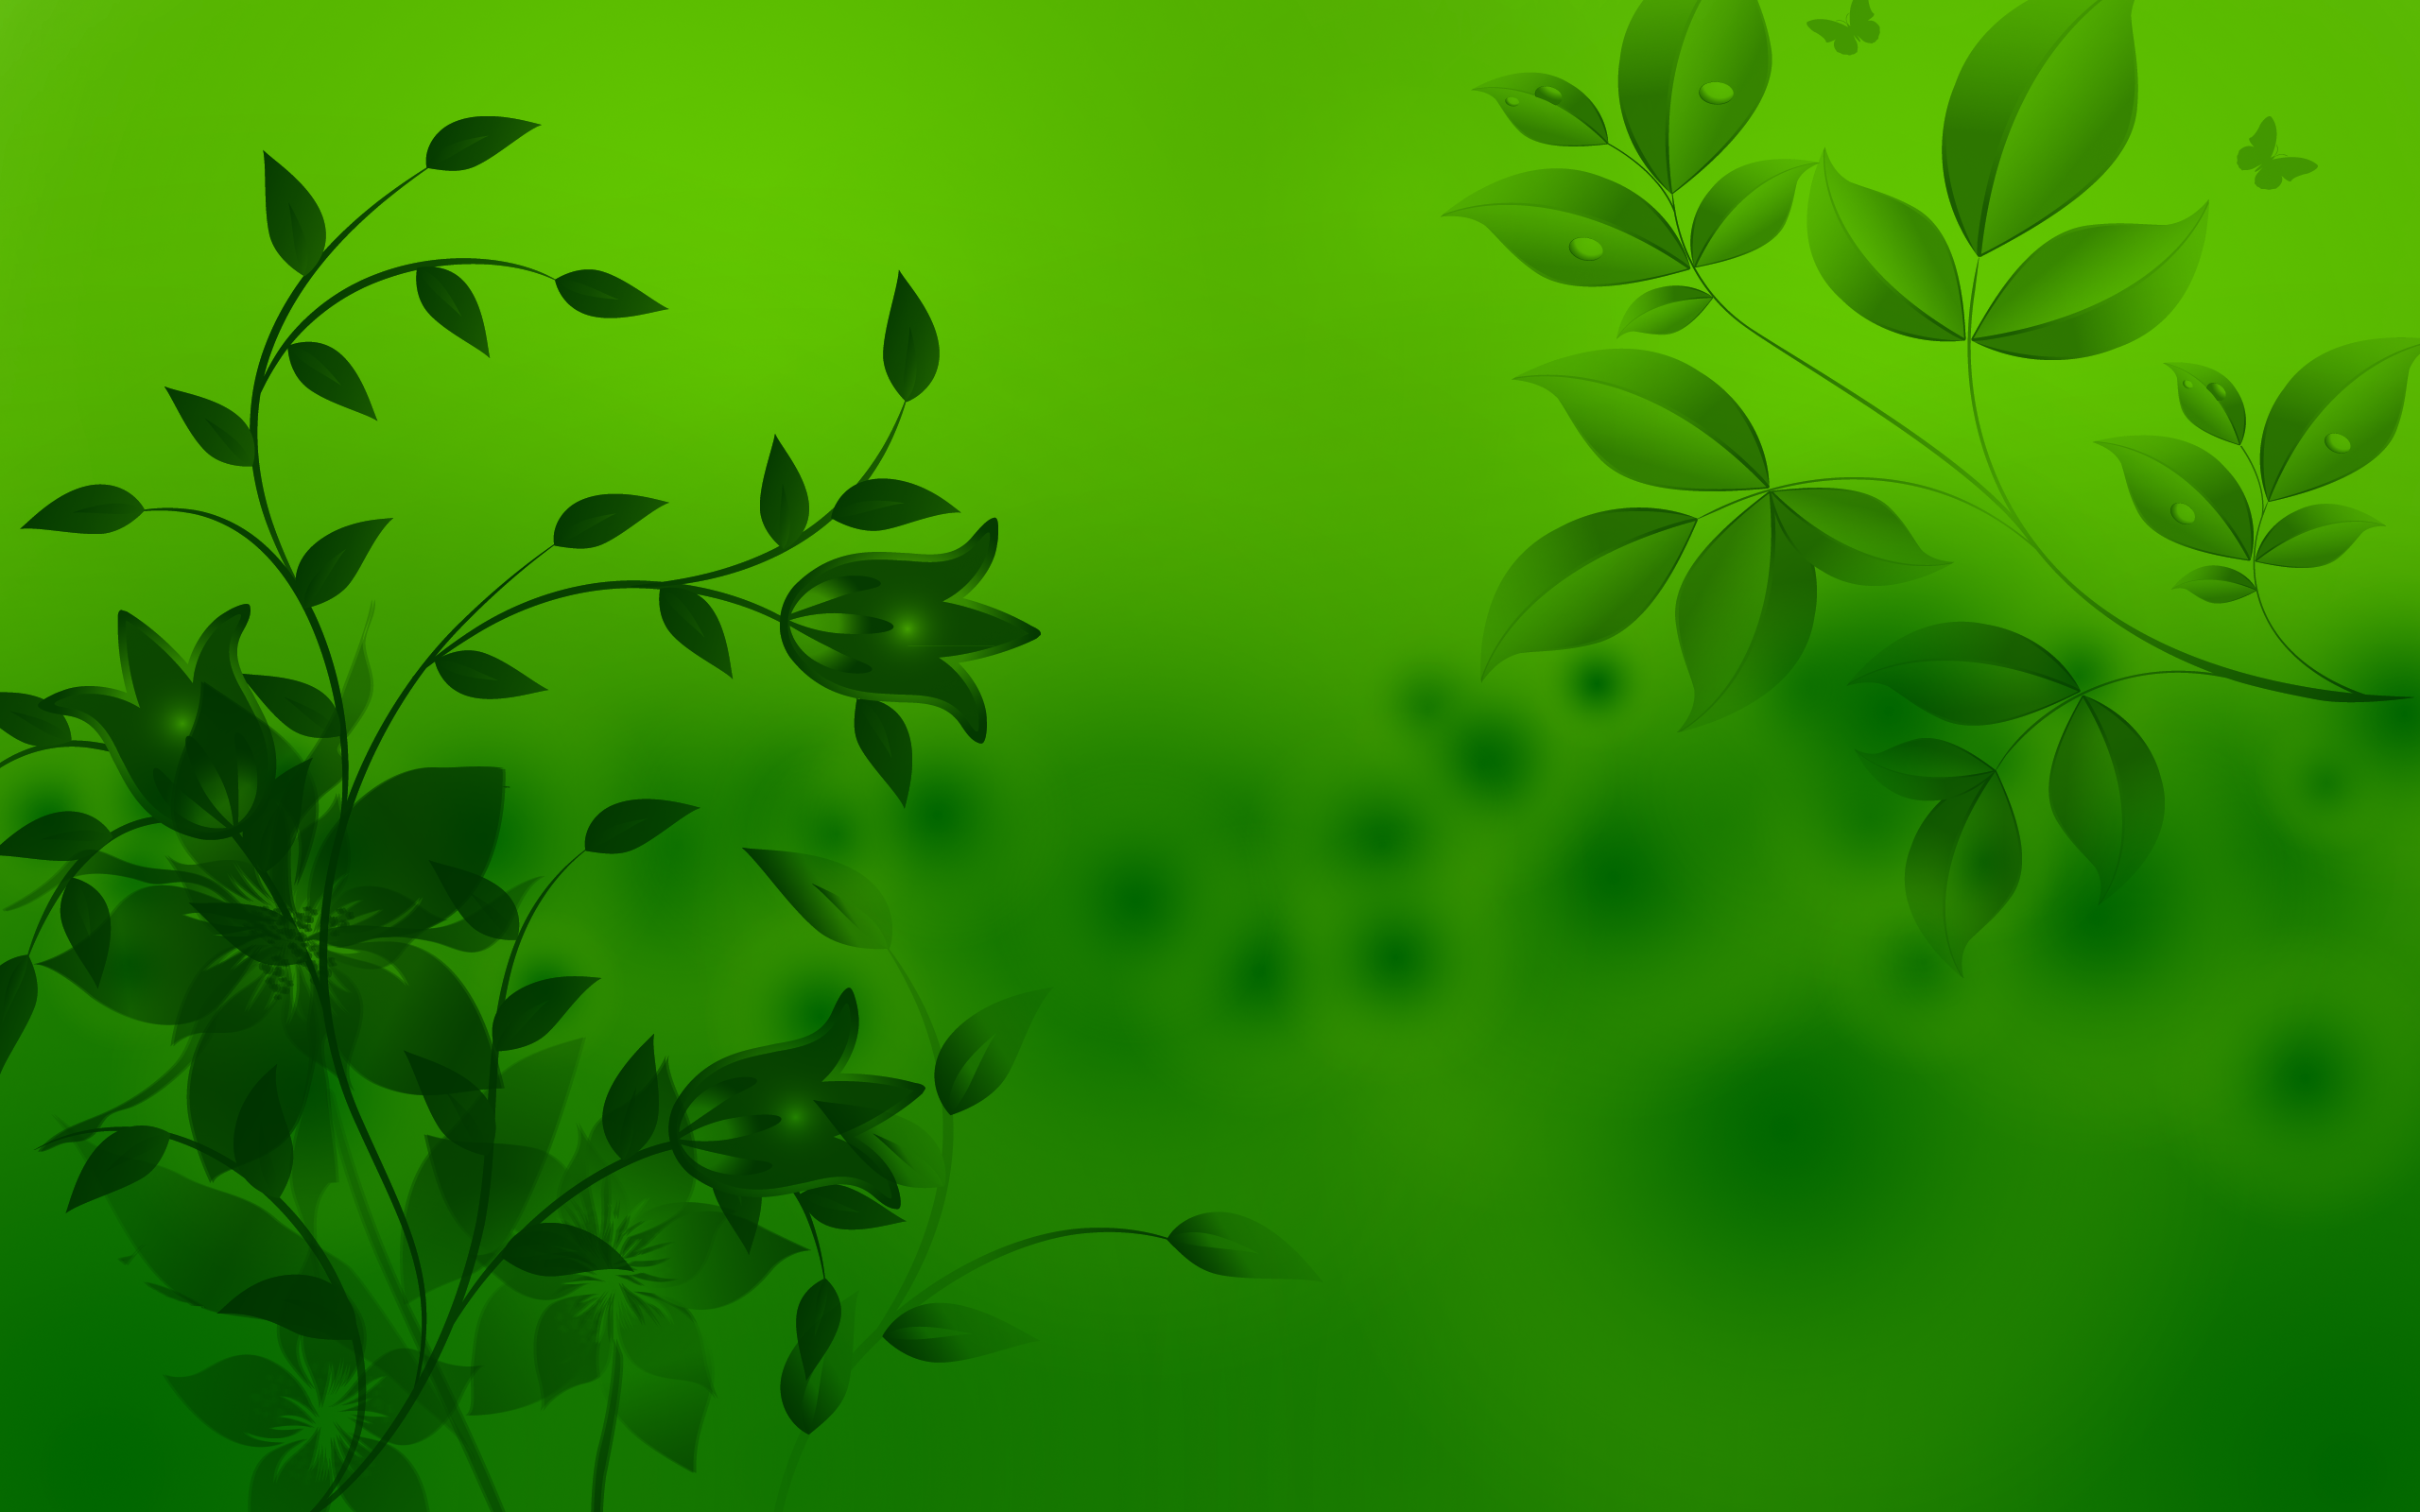 Bộ sưu tập hình nền Download green background hd đẹp và chất lượng cao